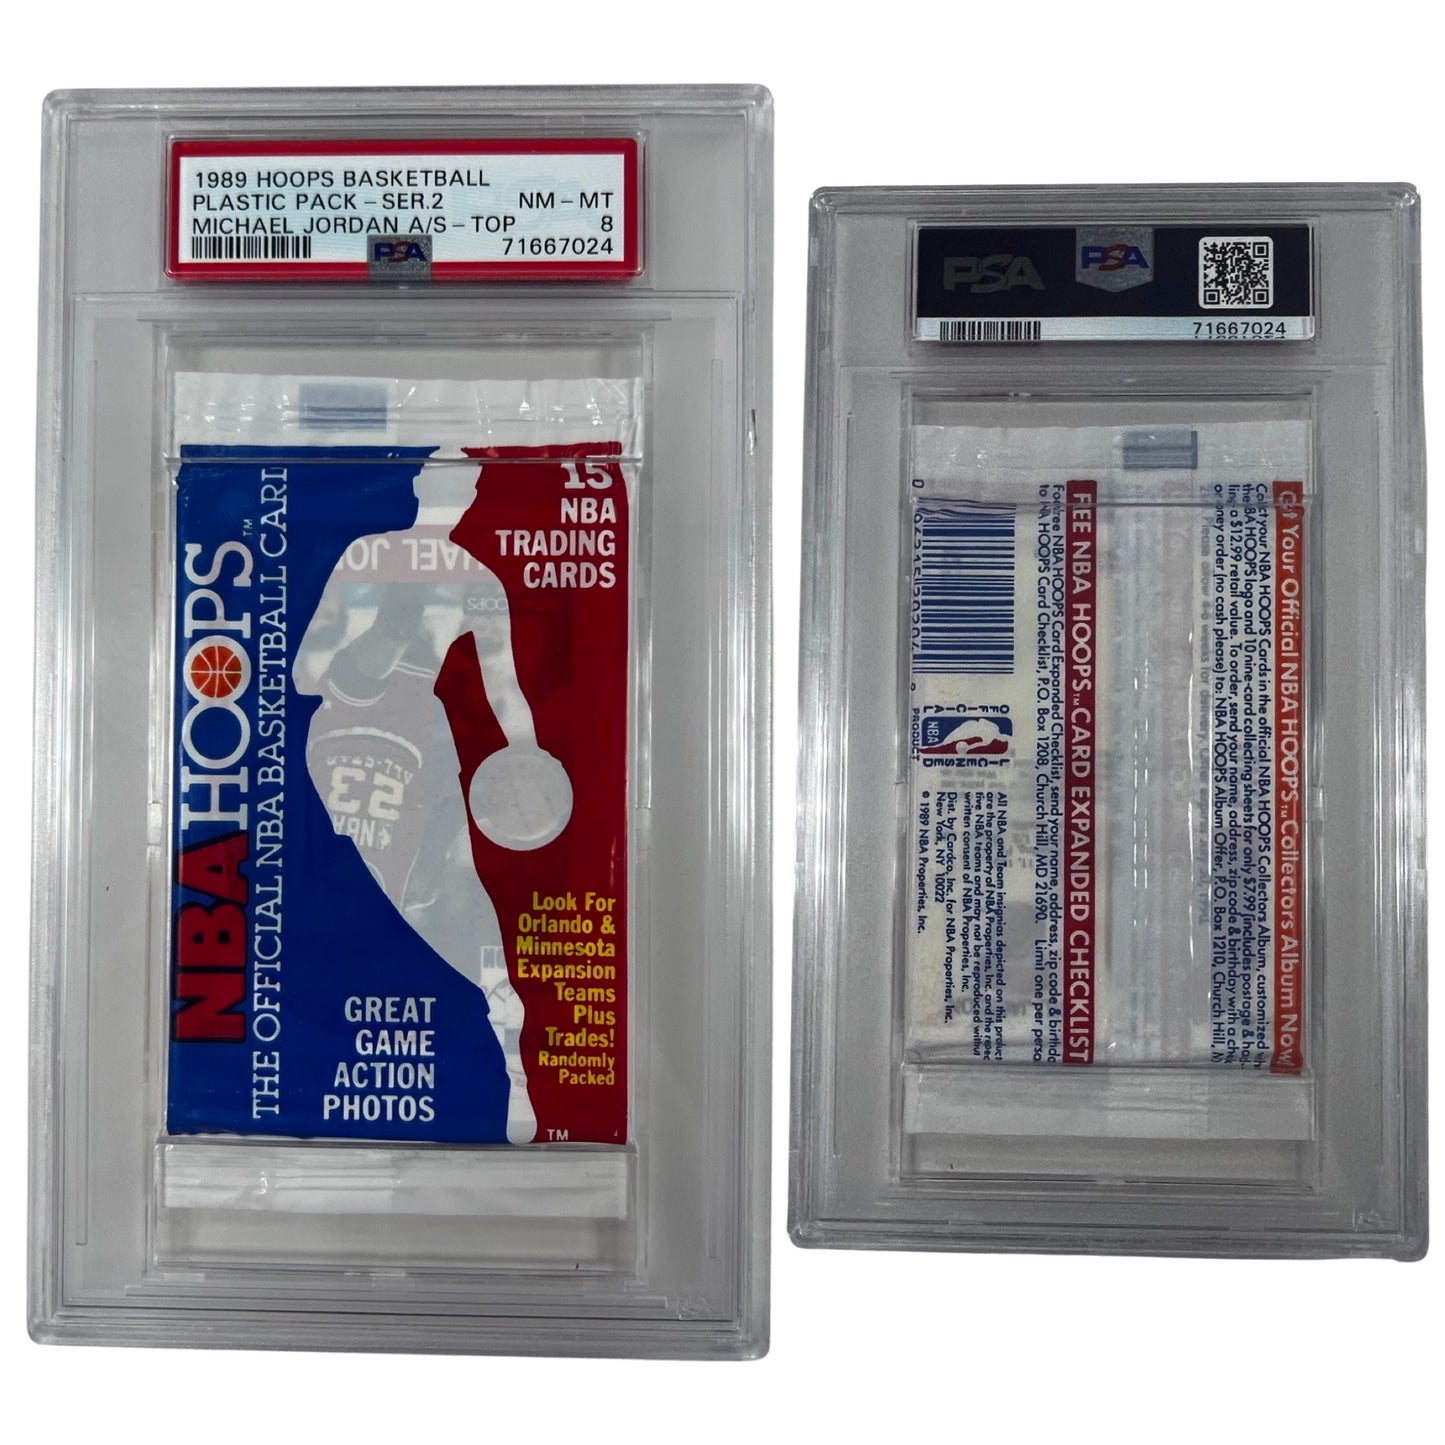 1989 Hoops Basketball Plastic Pack Series 2 Michael Jordan Top PSA NM-MT 8